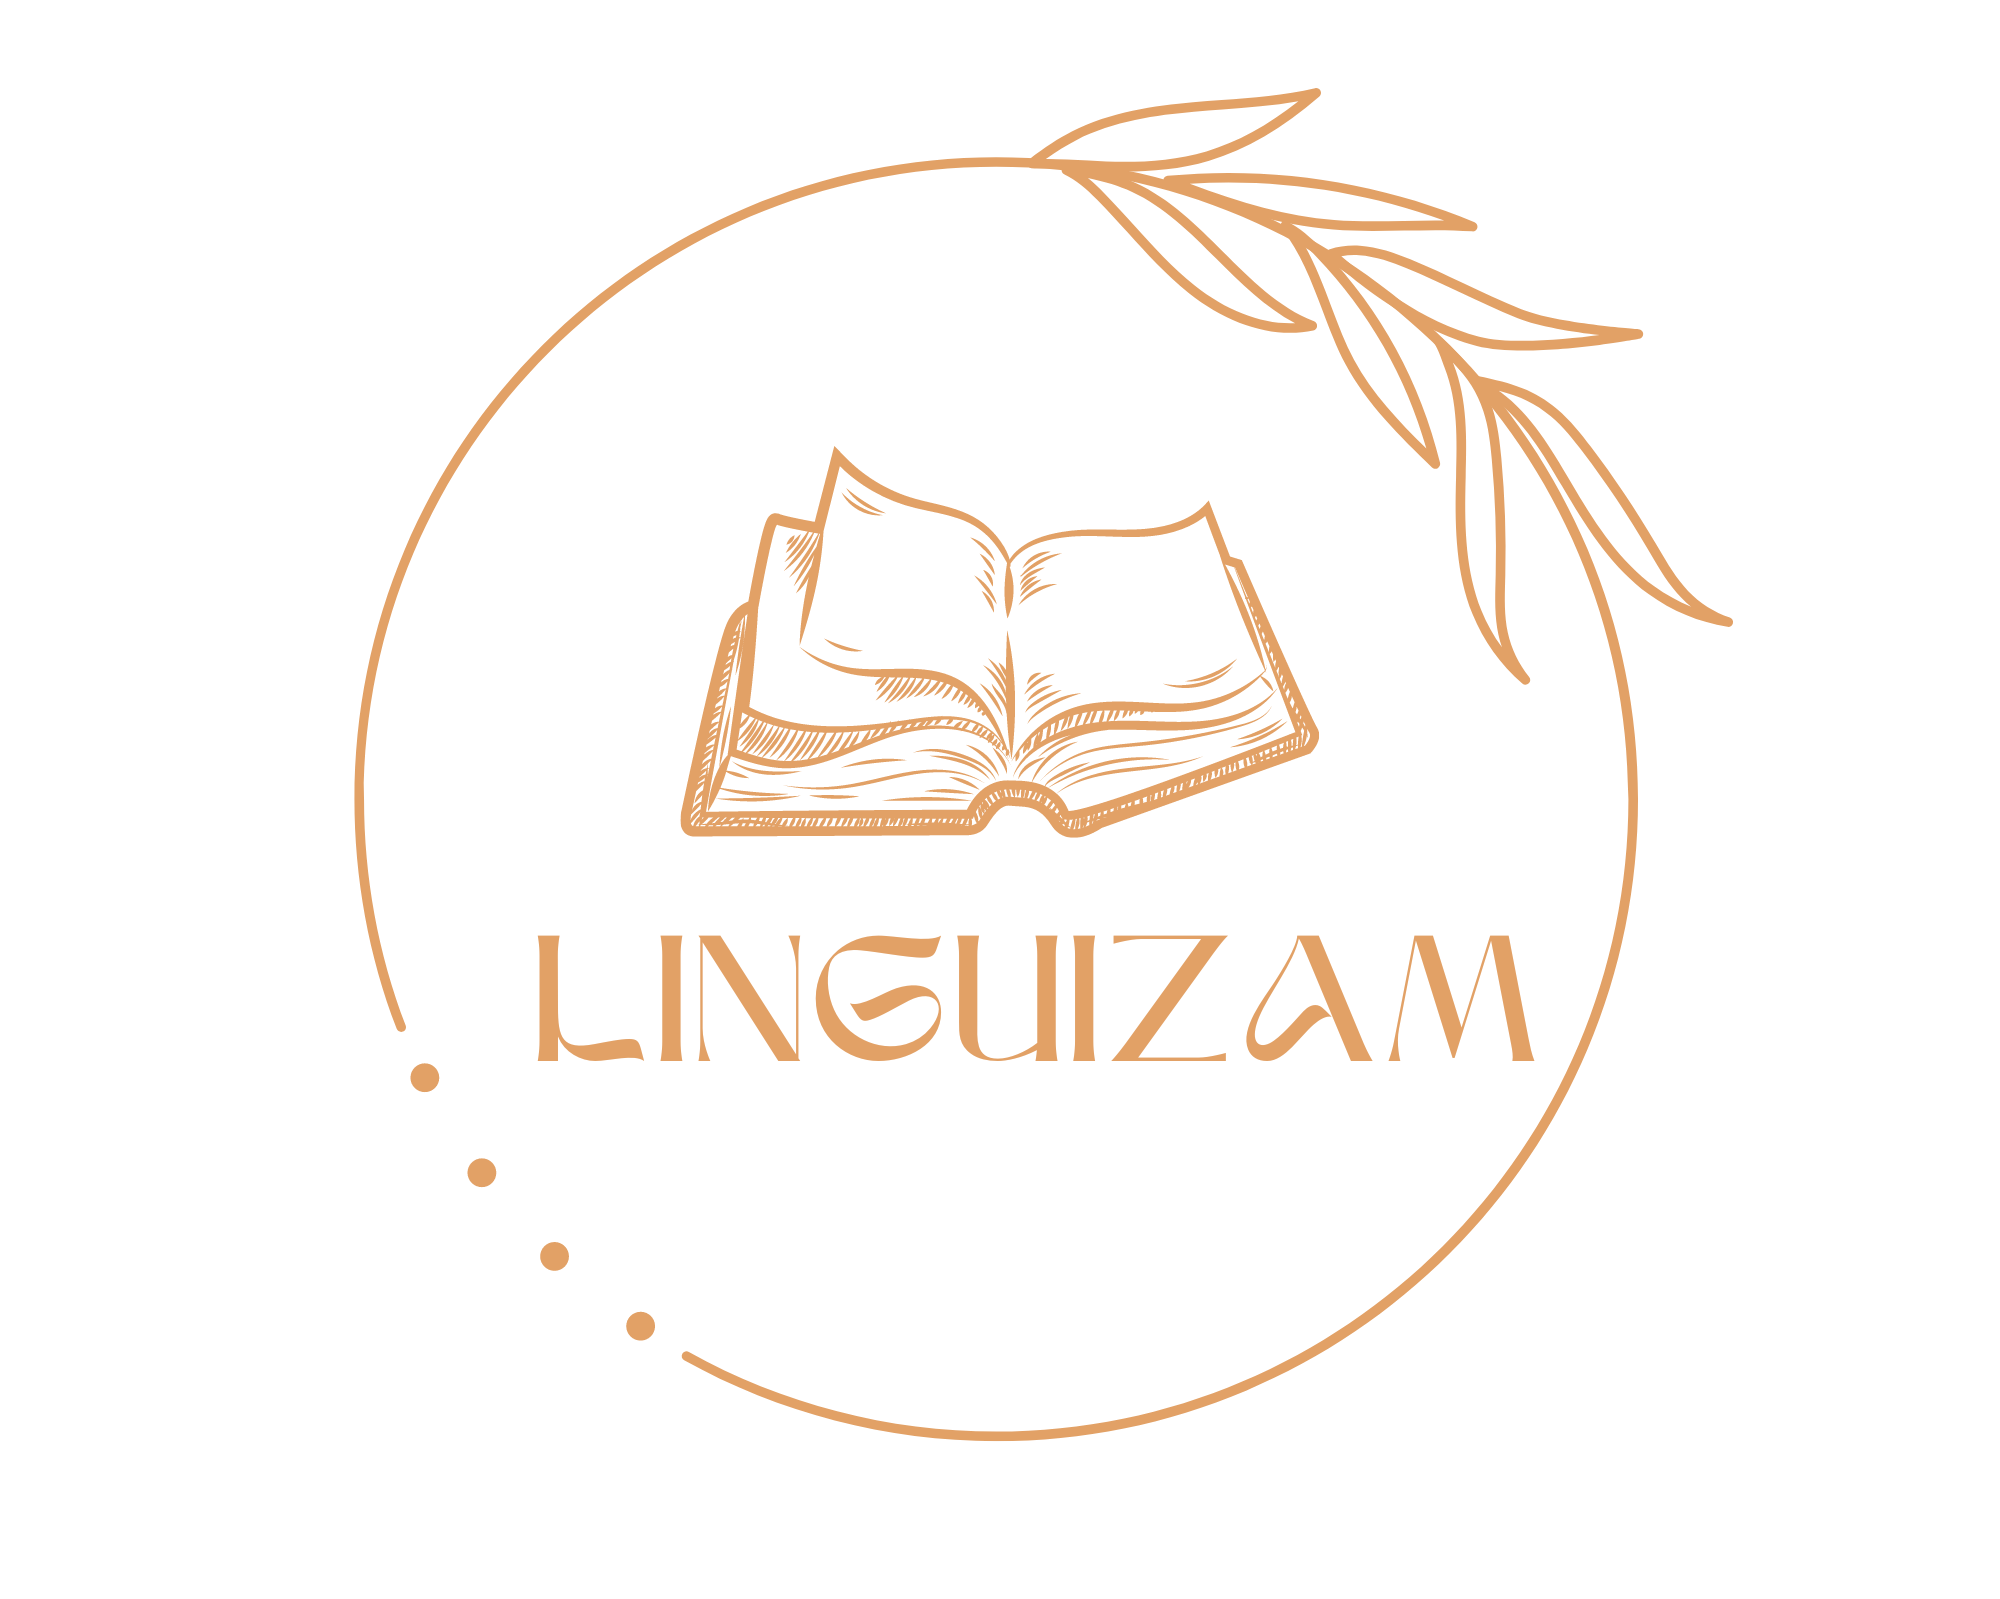 Linguizam